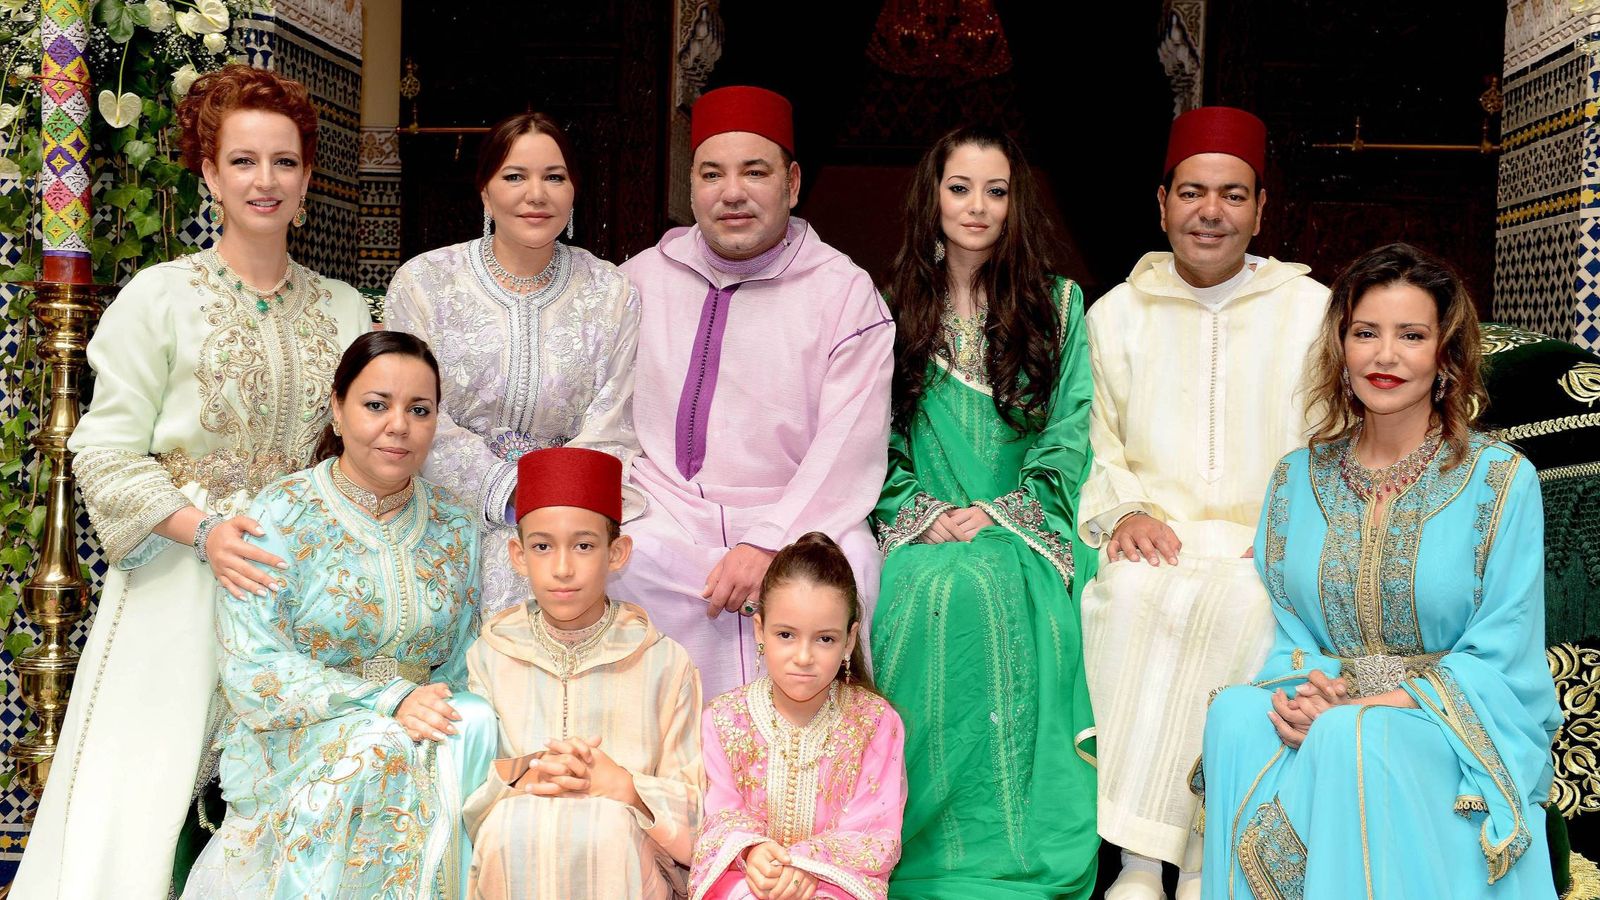 Foto:  La boda de Mulay Rachid y Lalla Oum. De izquierda a derecha, Lalla Salma, Lalla Hassan, Mohammed VI, Lalla Oum, Mulay Rachid y Lalla Meryem. Abajo, Lalla Asma, Mulay Hassan y Lalla Kadhija. (CP)